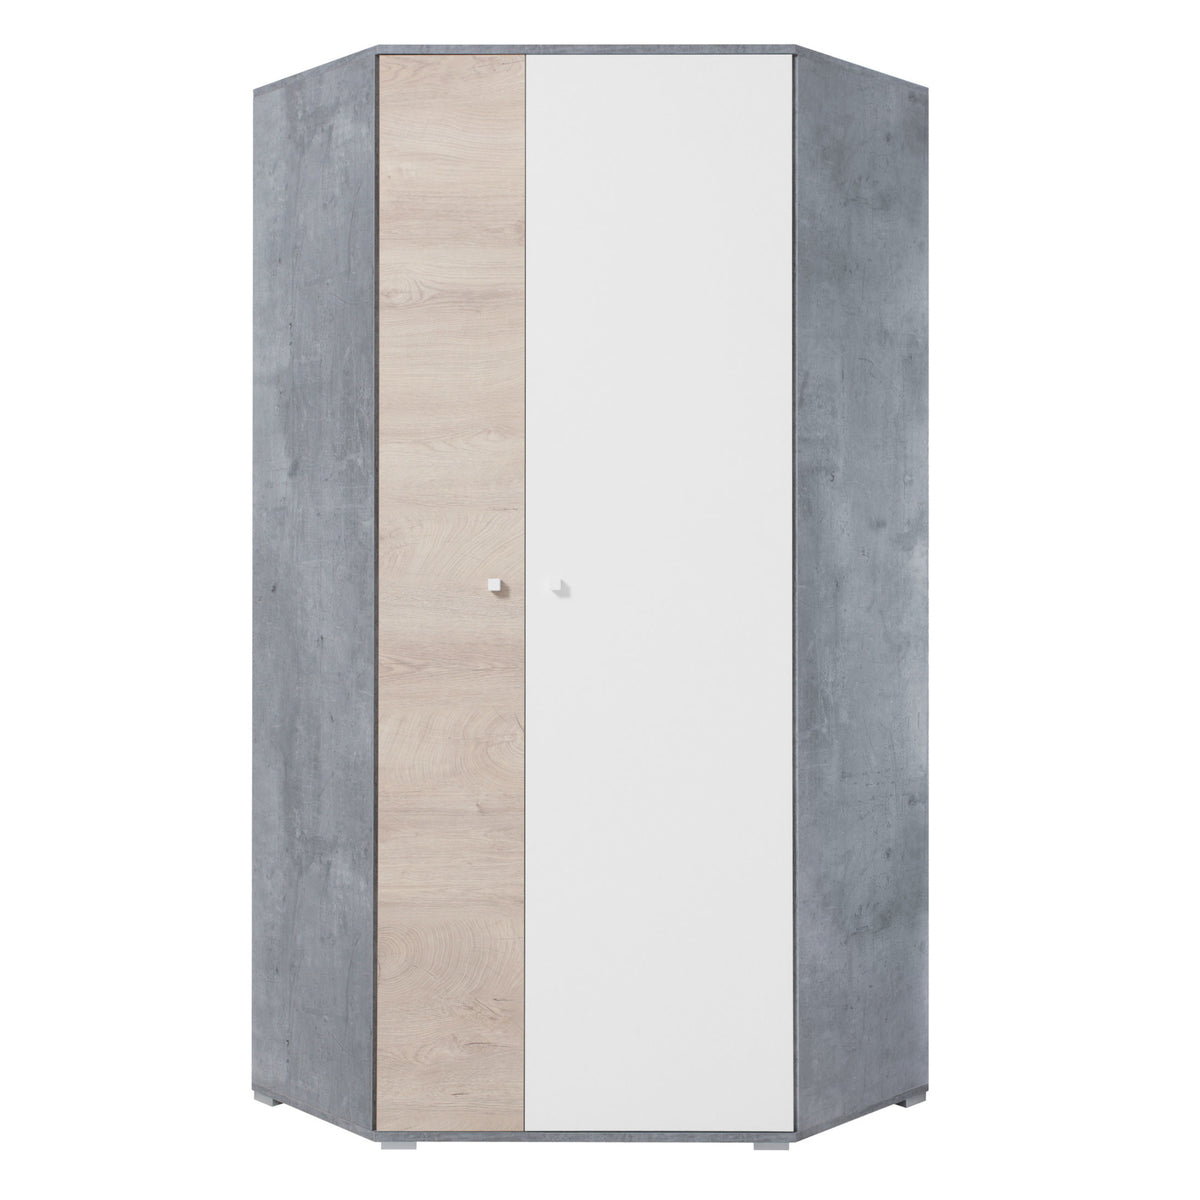 Rohová šatní skříň Amasi (beton, bílá, dub)